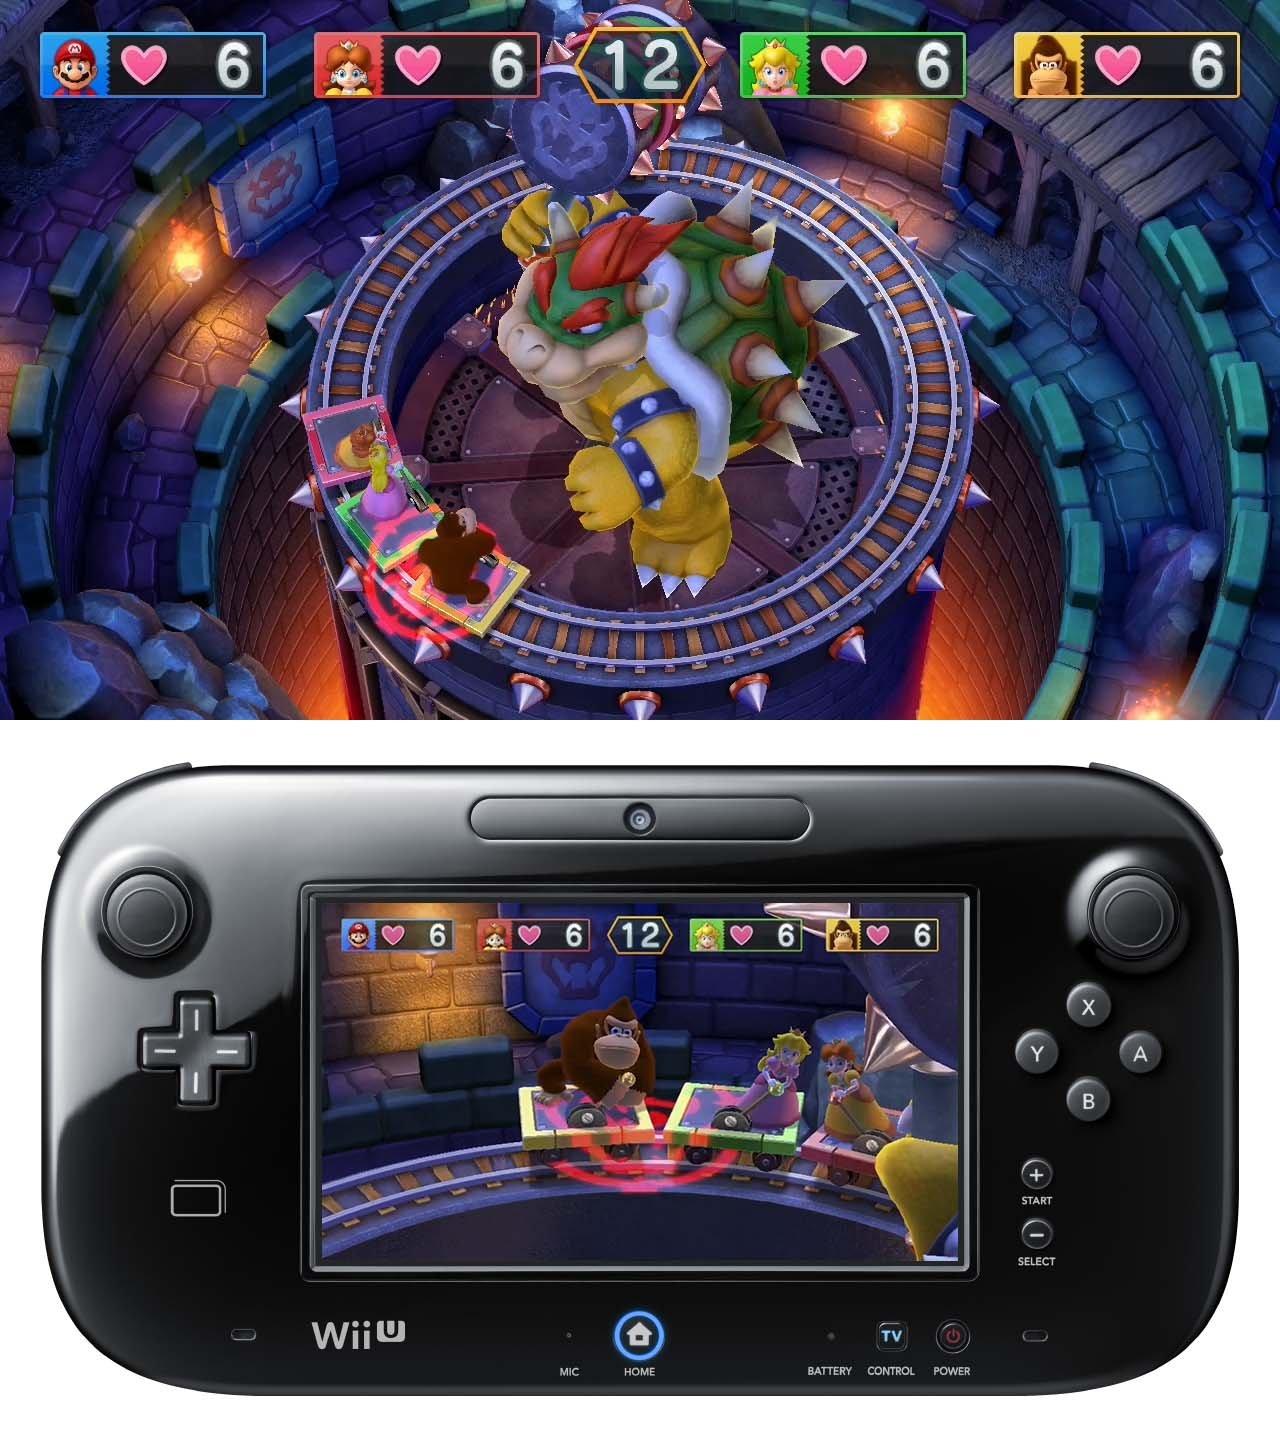 Mario Party 10 Selects (Nintendo Wii U)